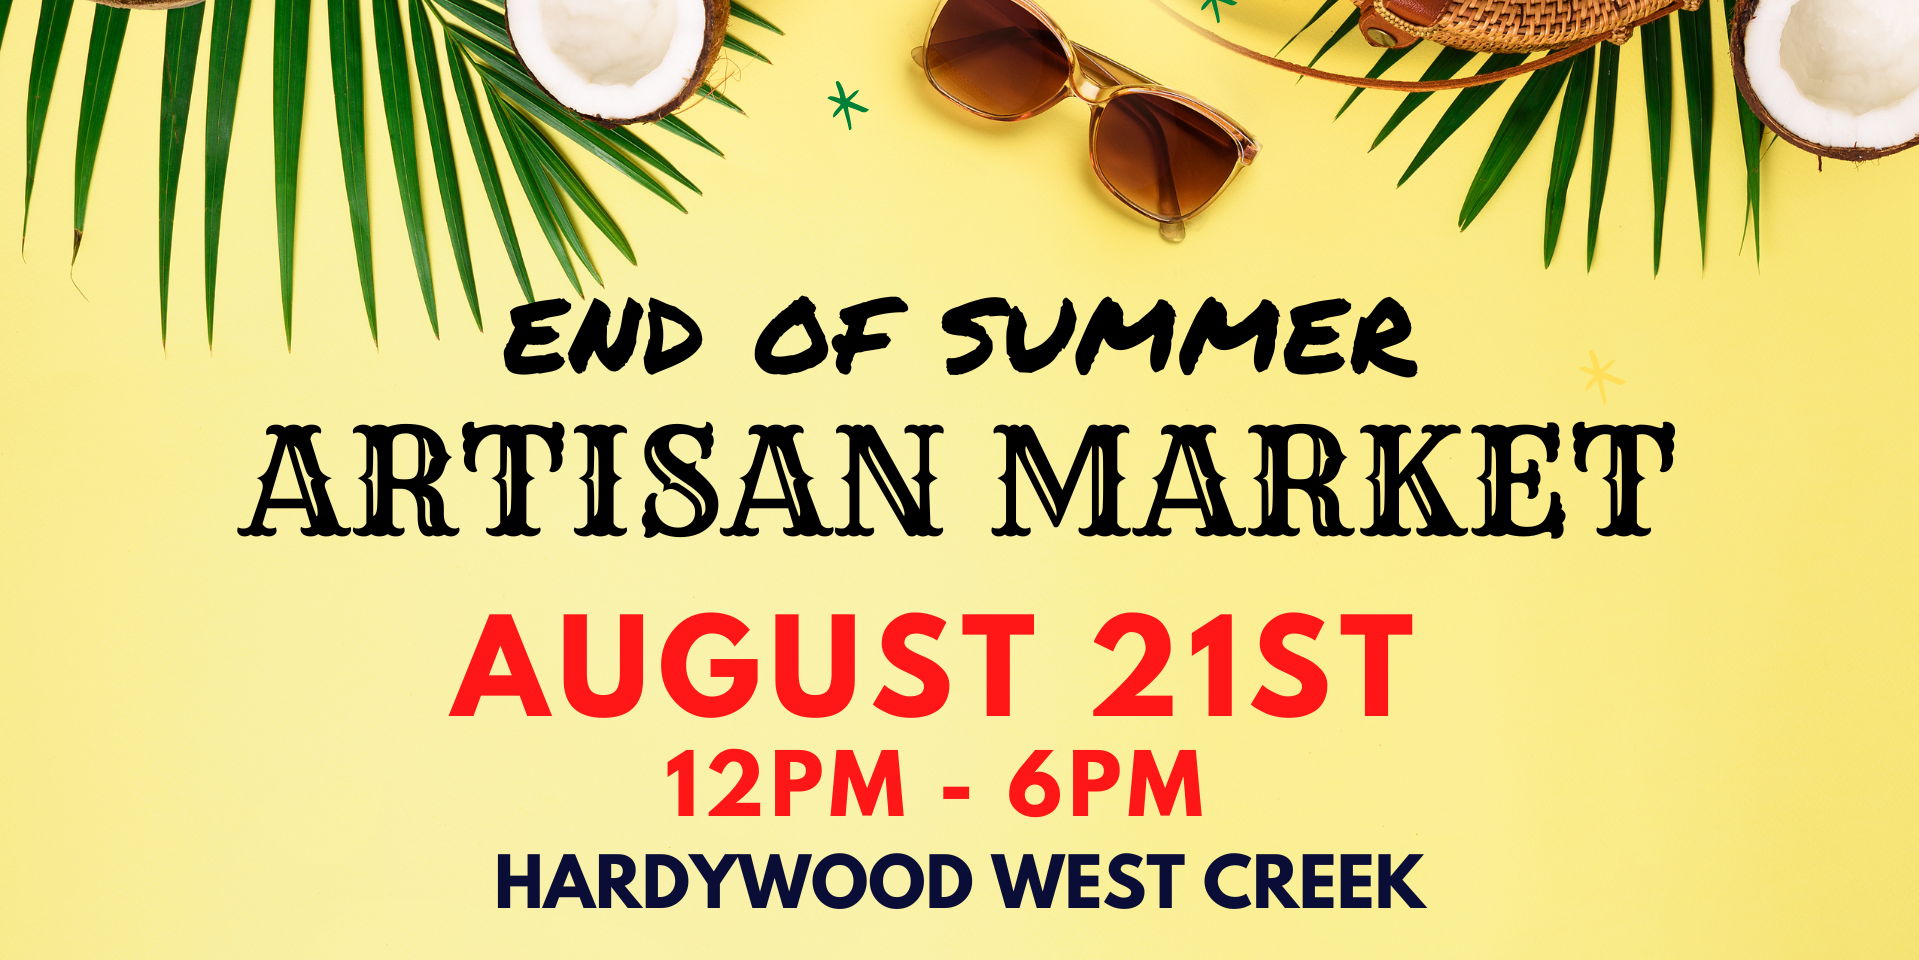 End of Summer Artisan Market promotional image